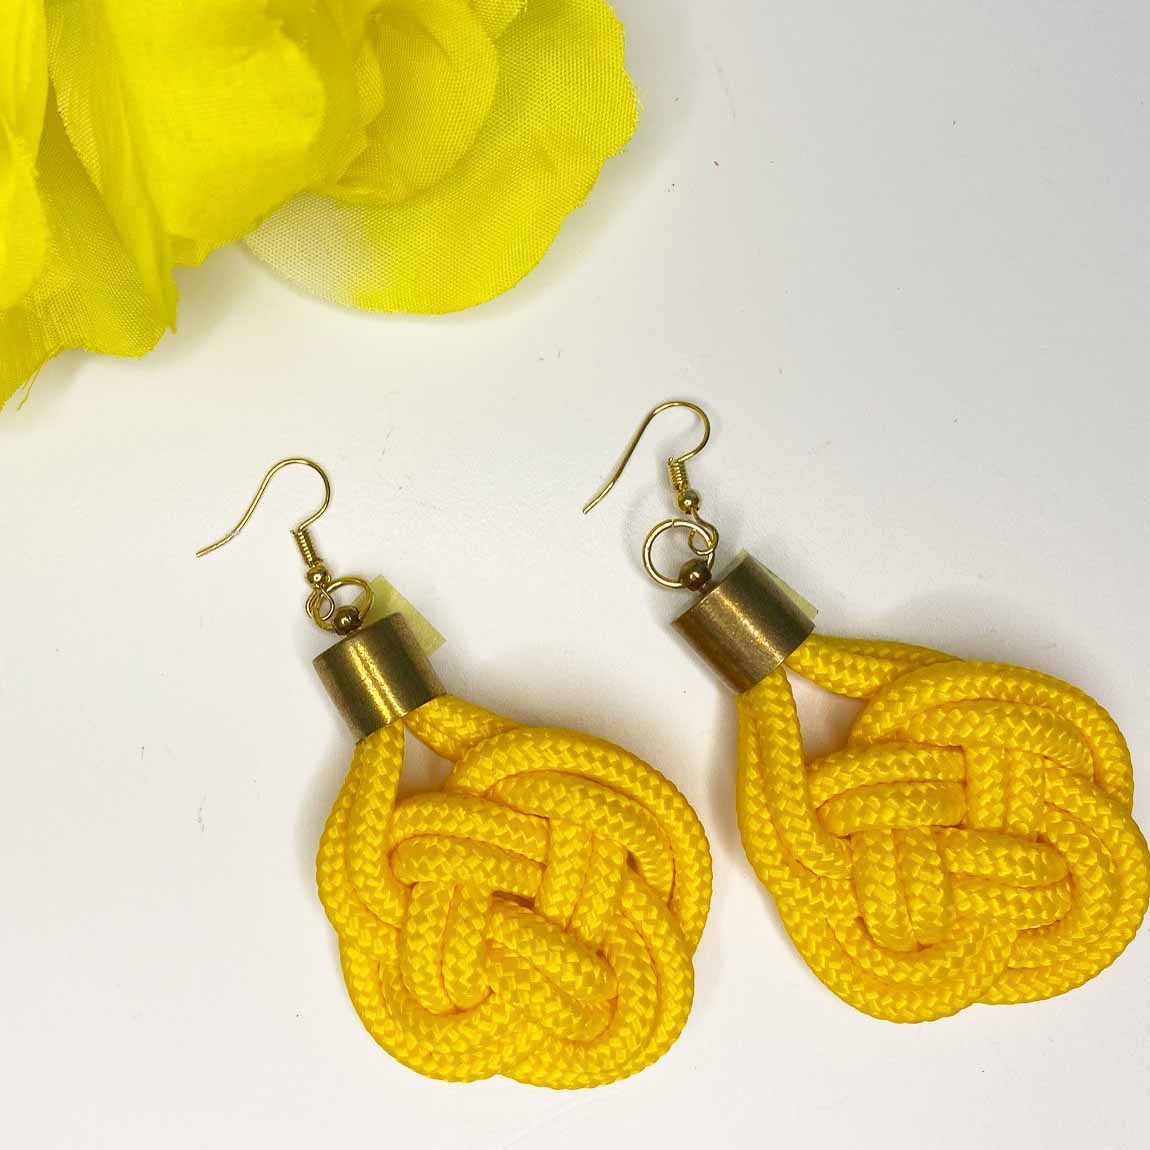 Knot earrings - Yellow